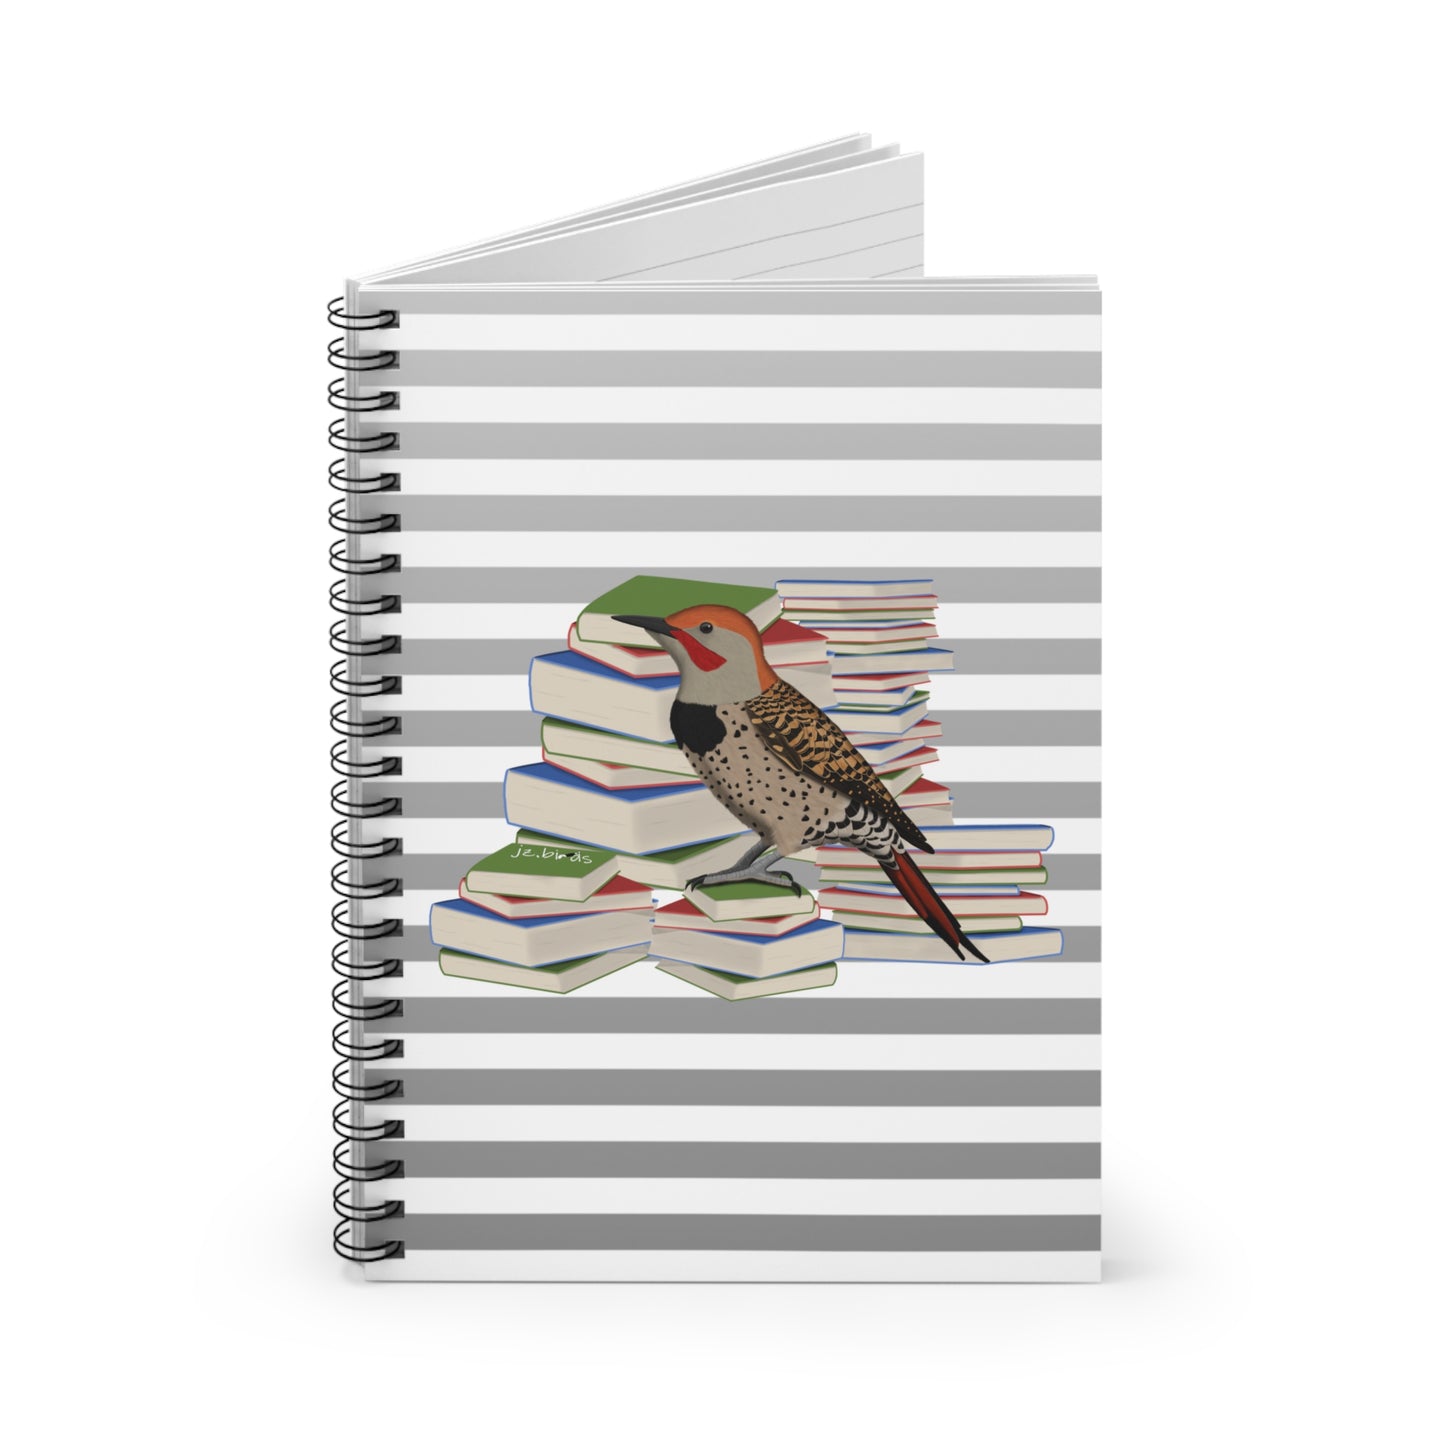 Northern Flicker Bird with Books Birdlover Bookworm Spiral Notebook Ruled Line 6" x 8"